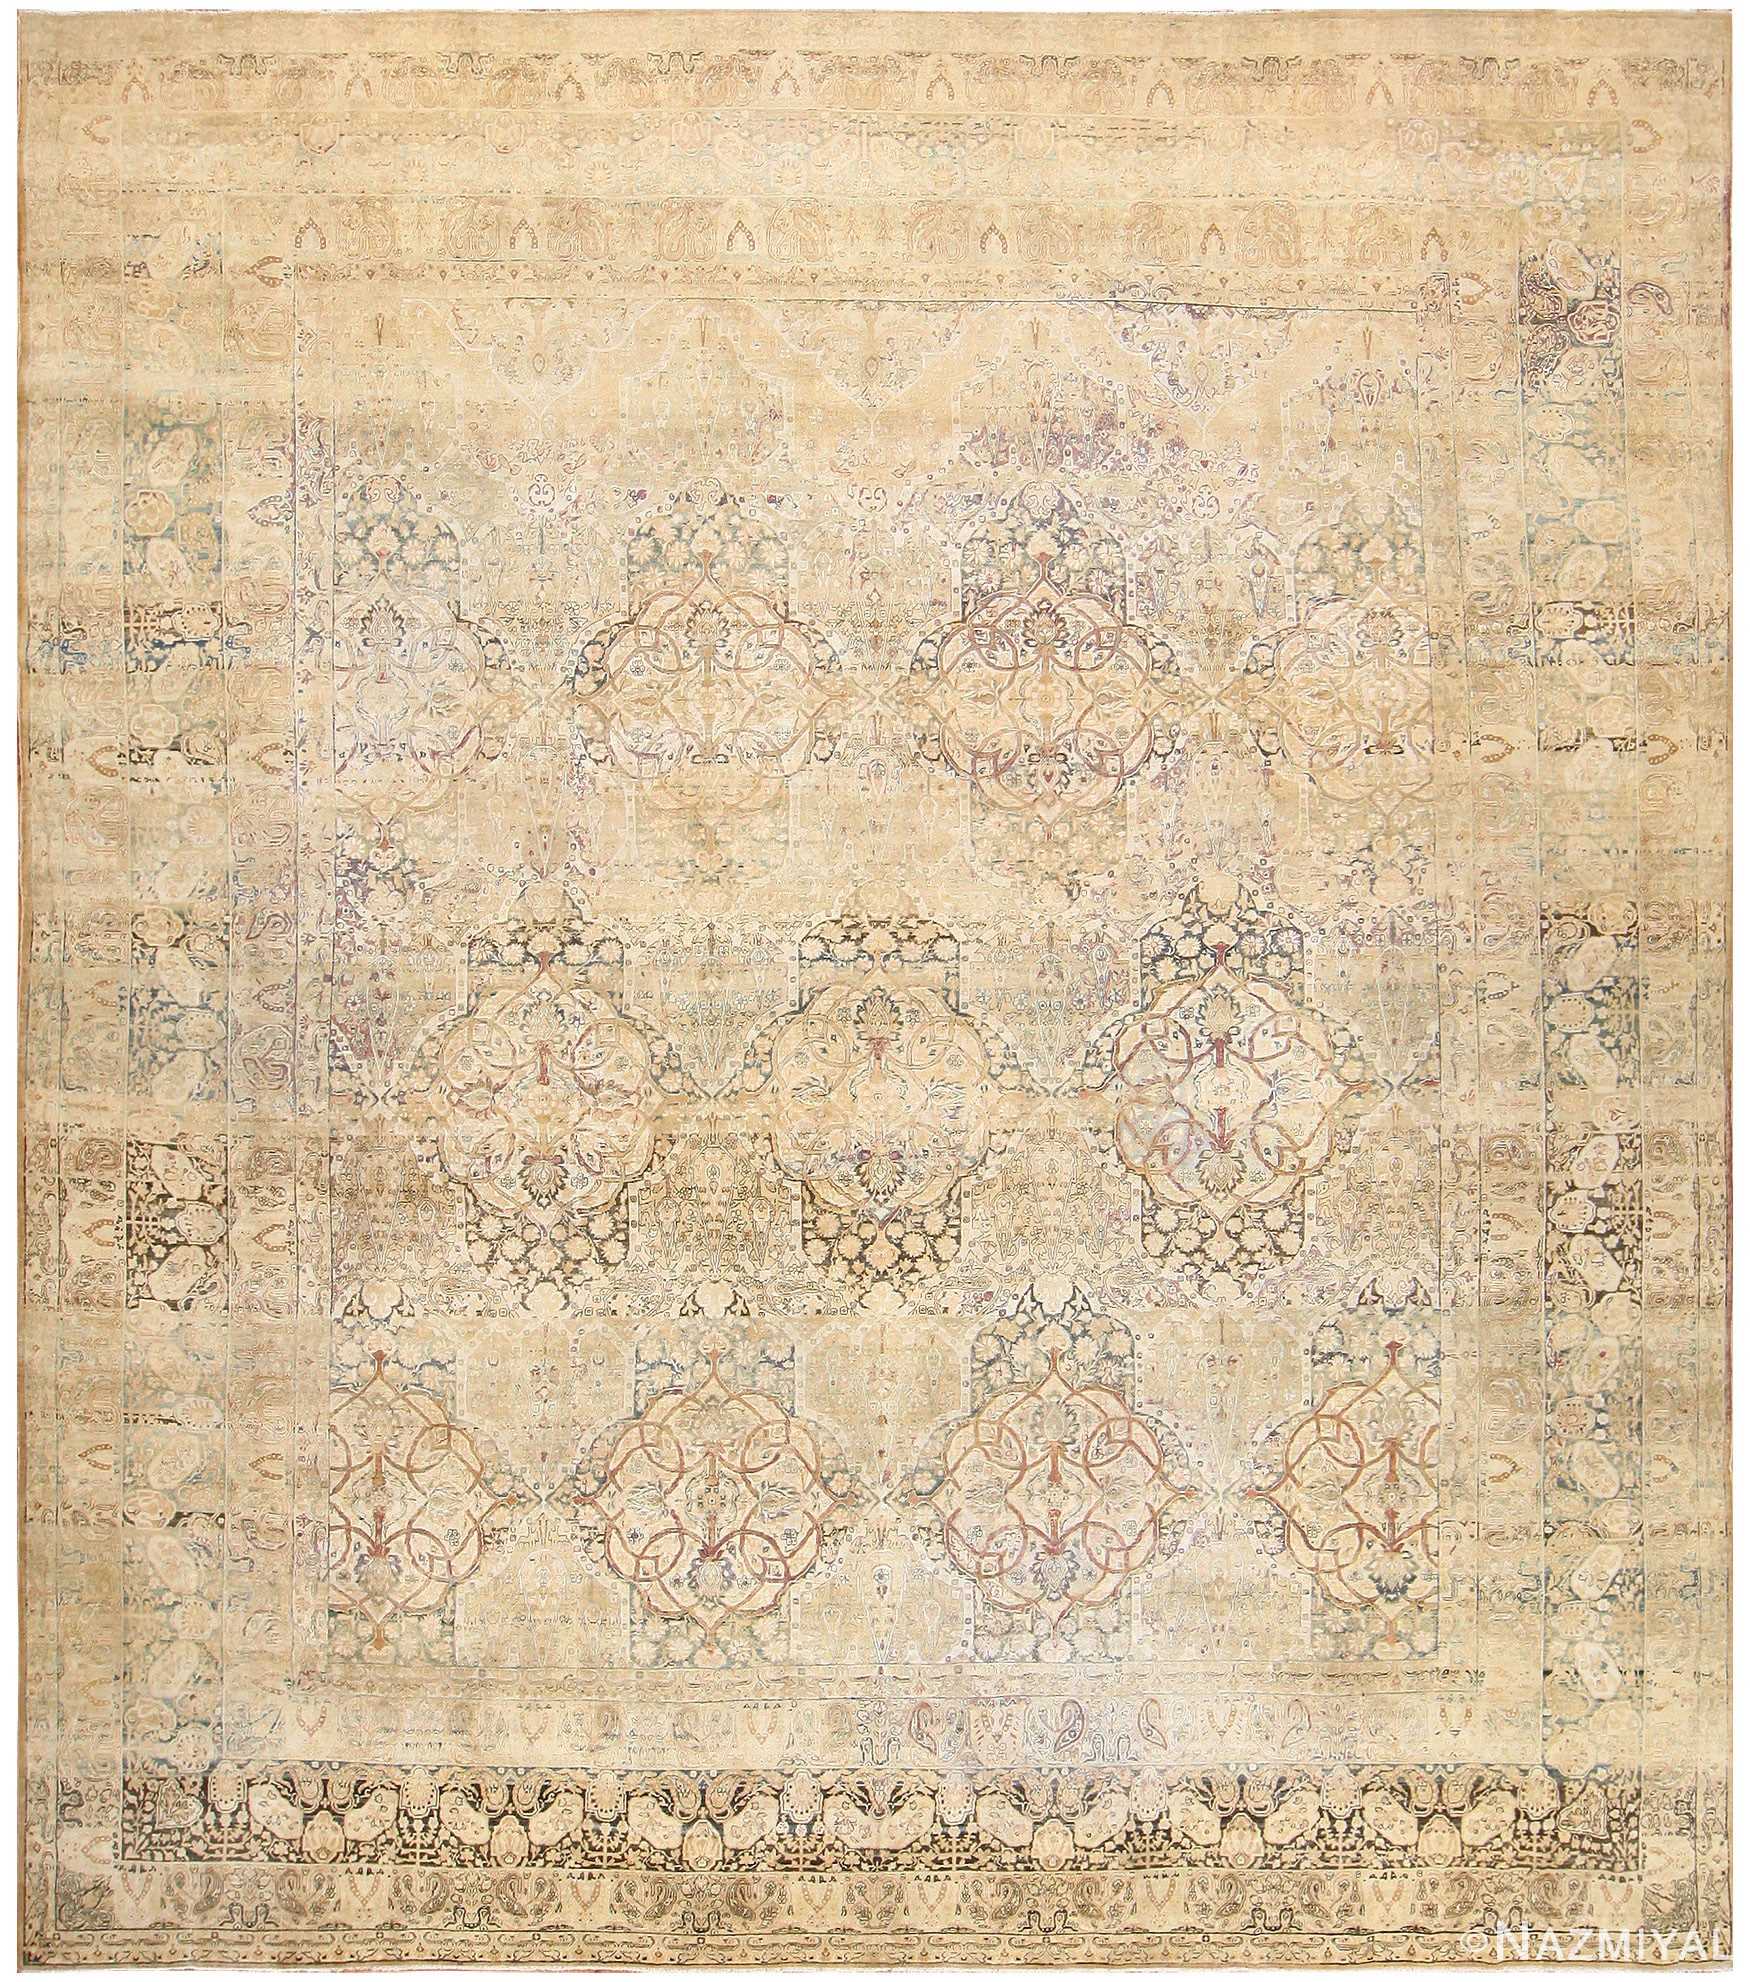 Large Antique Persian Kerman Carpet 70864 by Nazmiyal Antique Rugs